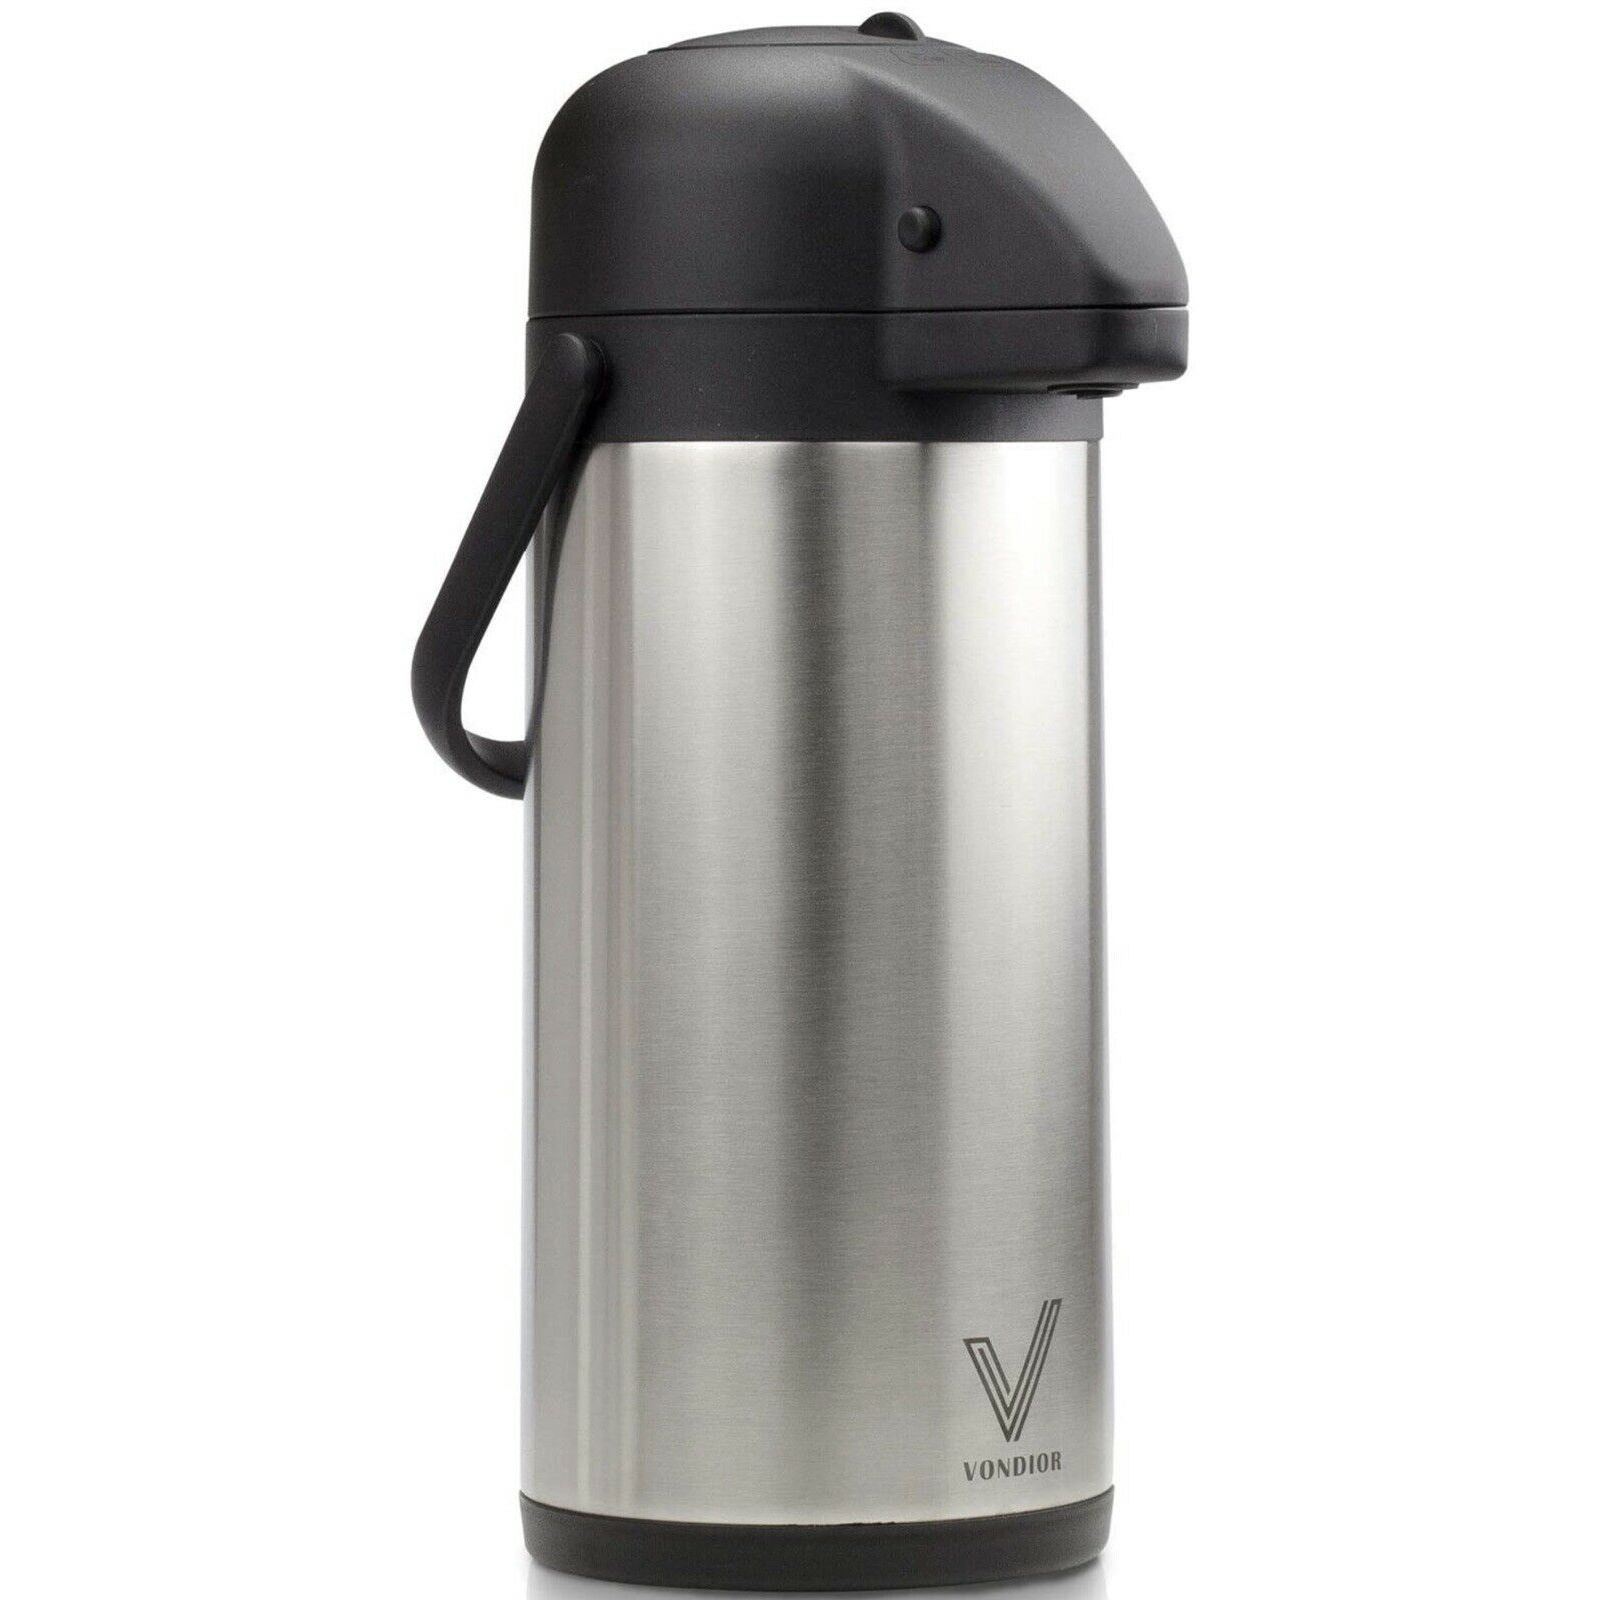 Thermal Air-Pump Coffee Dispenser 85oz